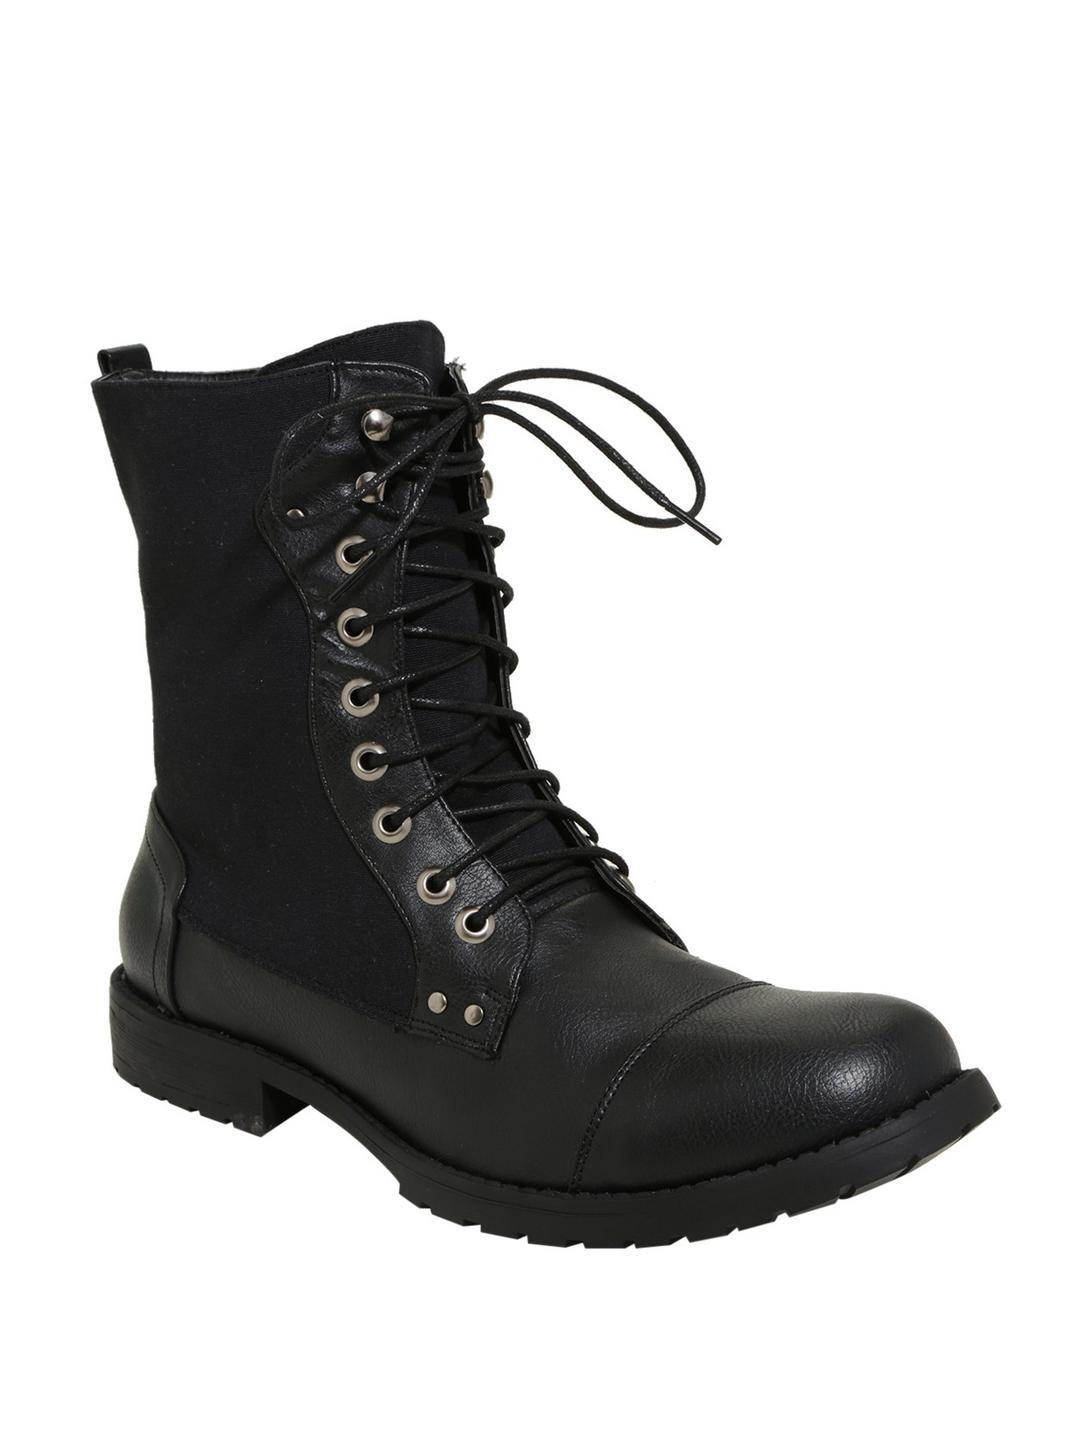 Black Lace-Up Combat Boots, BLACK, hi-res